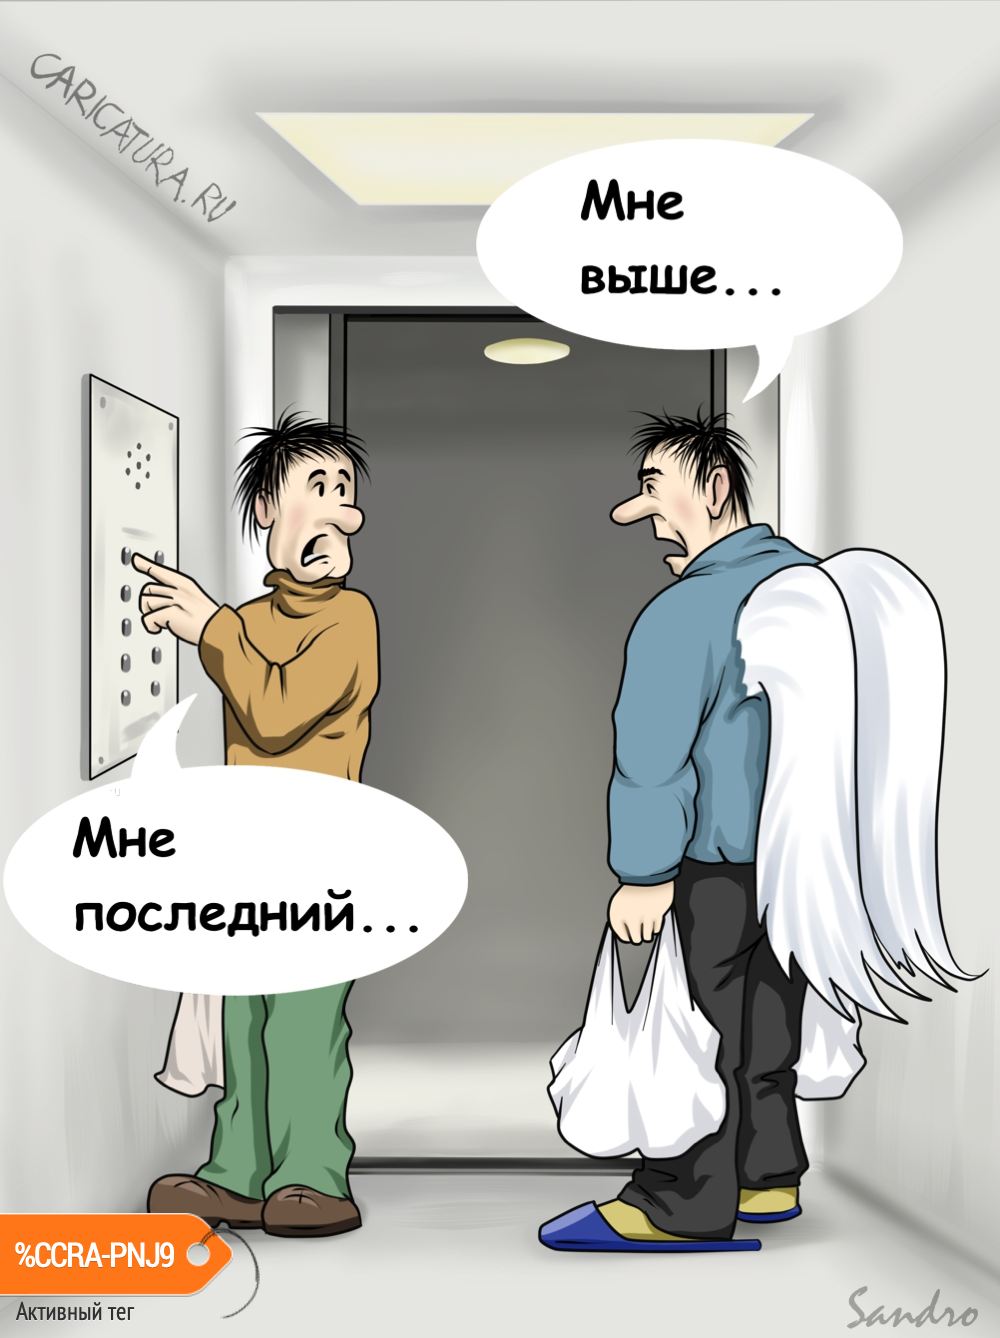 Карикатура "В лифте", Alex Sandro